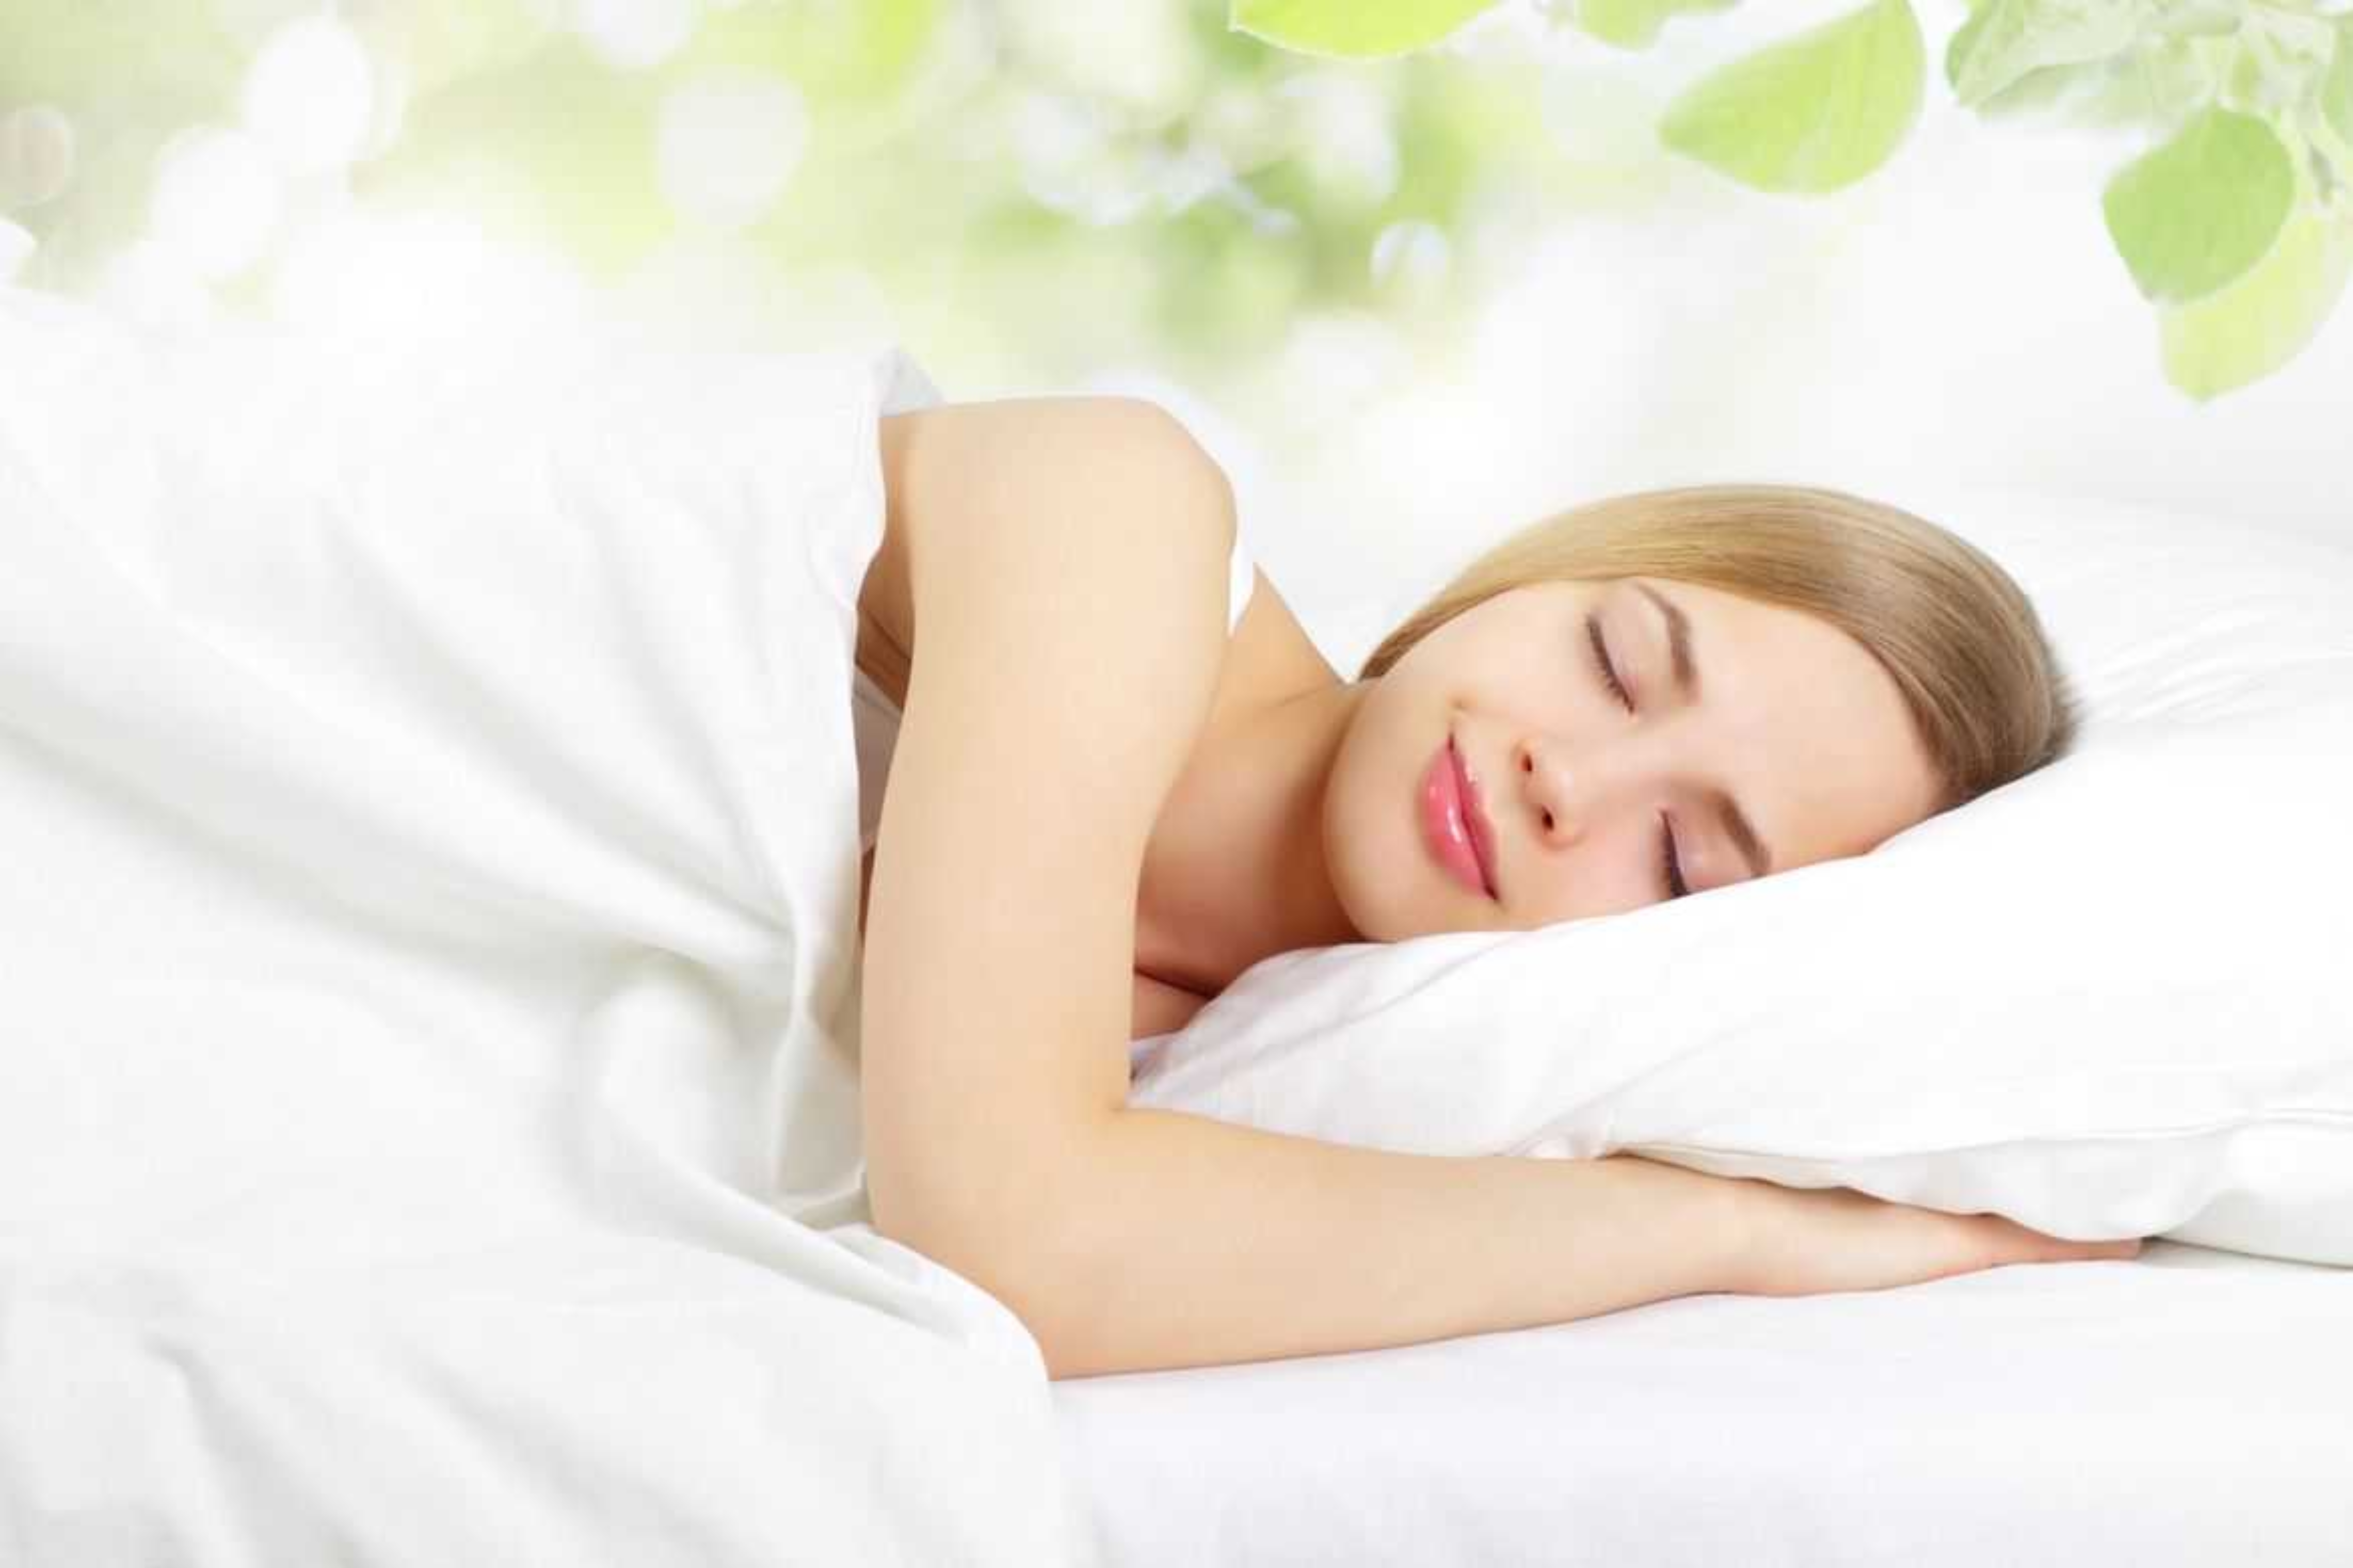 שינה בריאה - נקו את המזרן שלכם